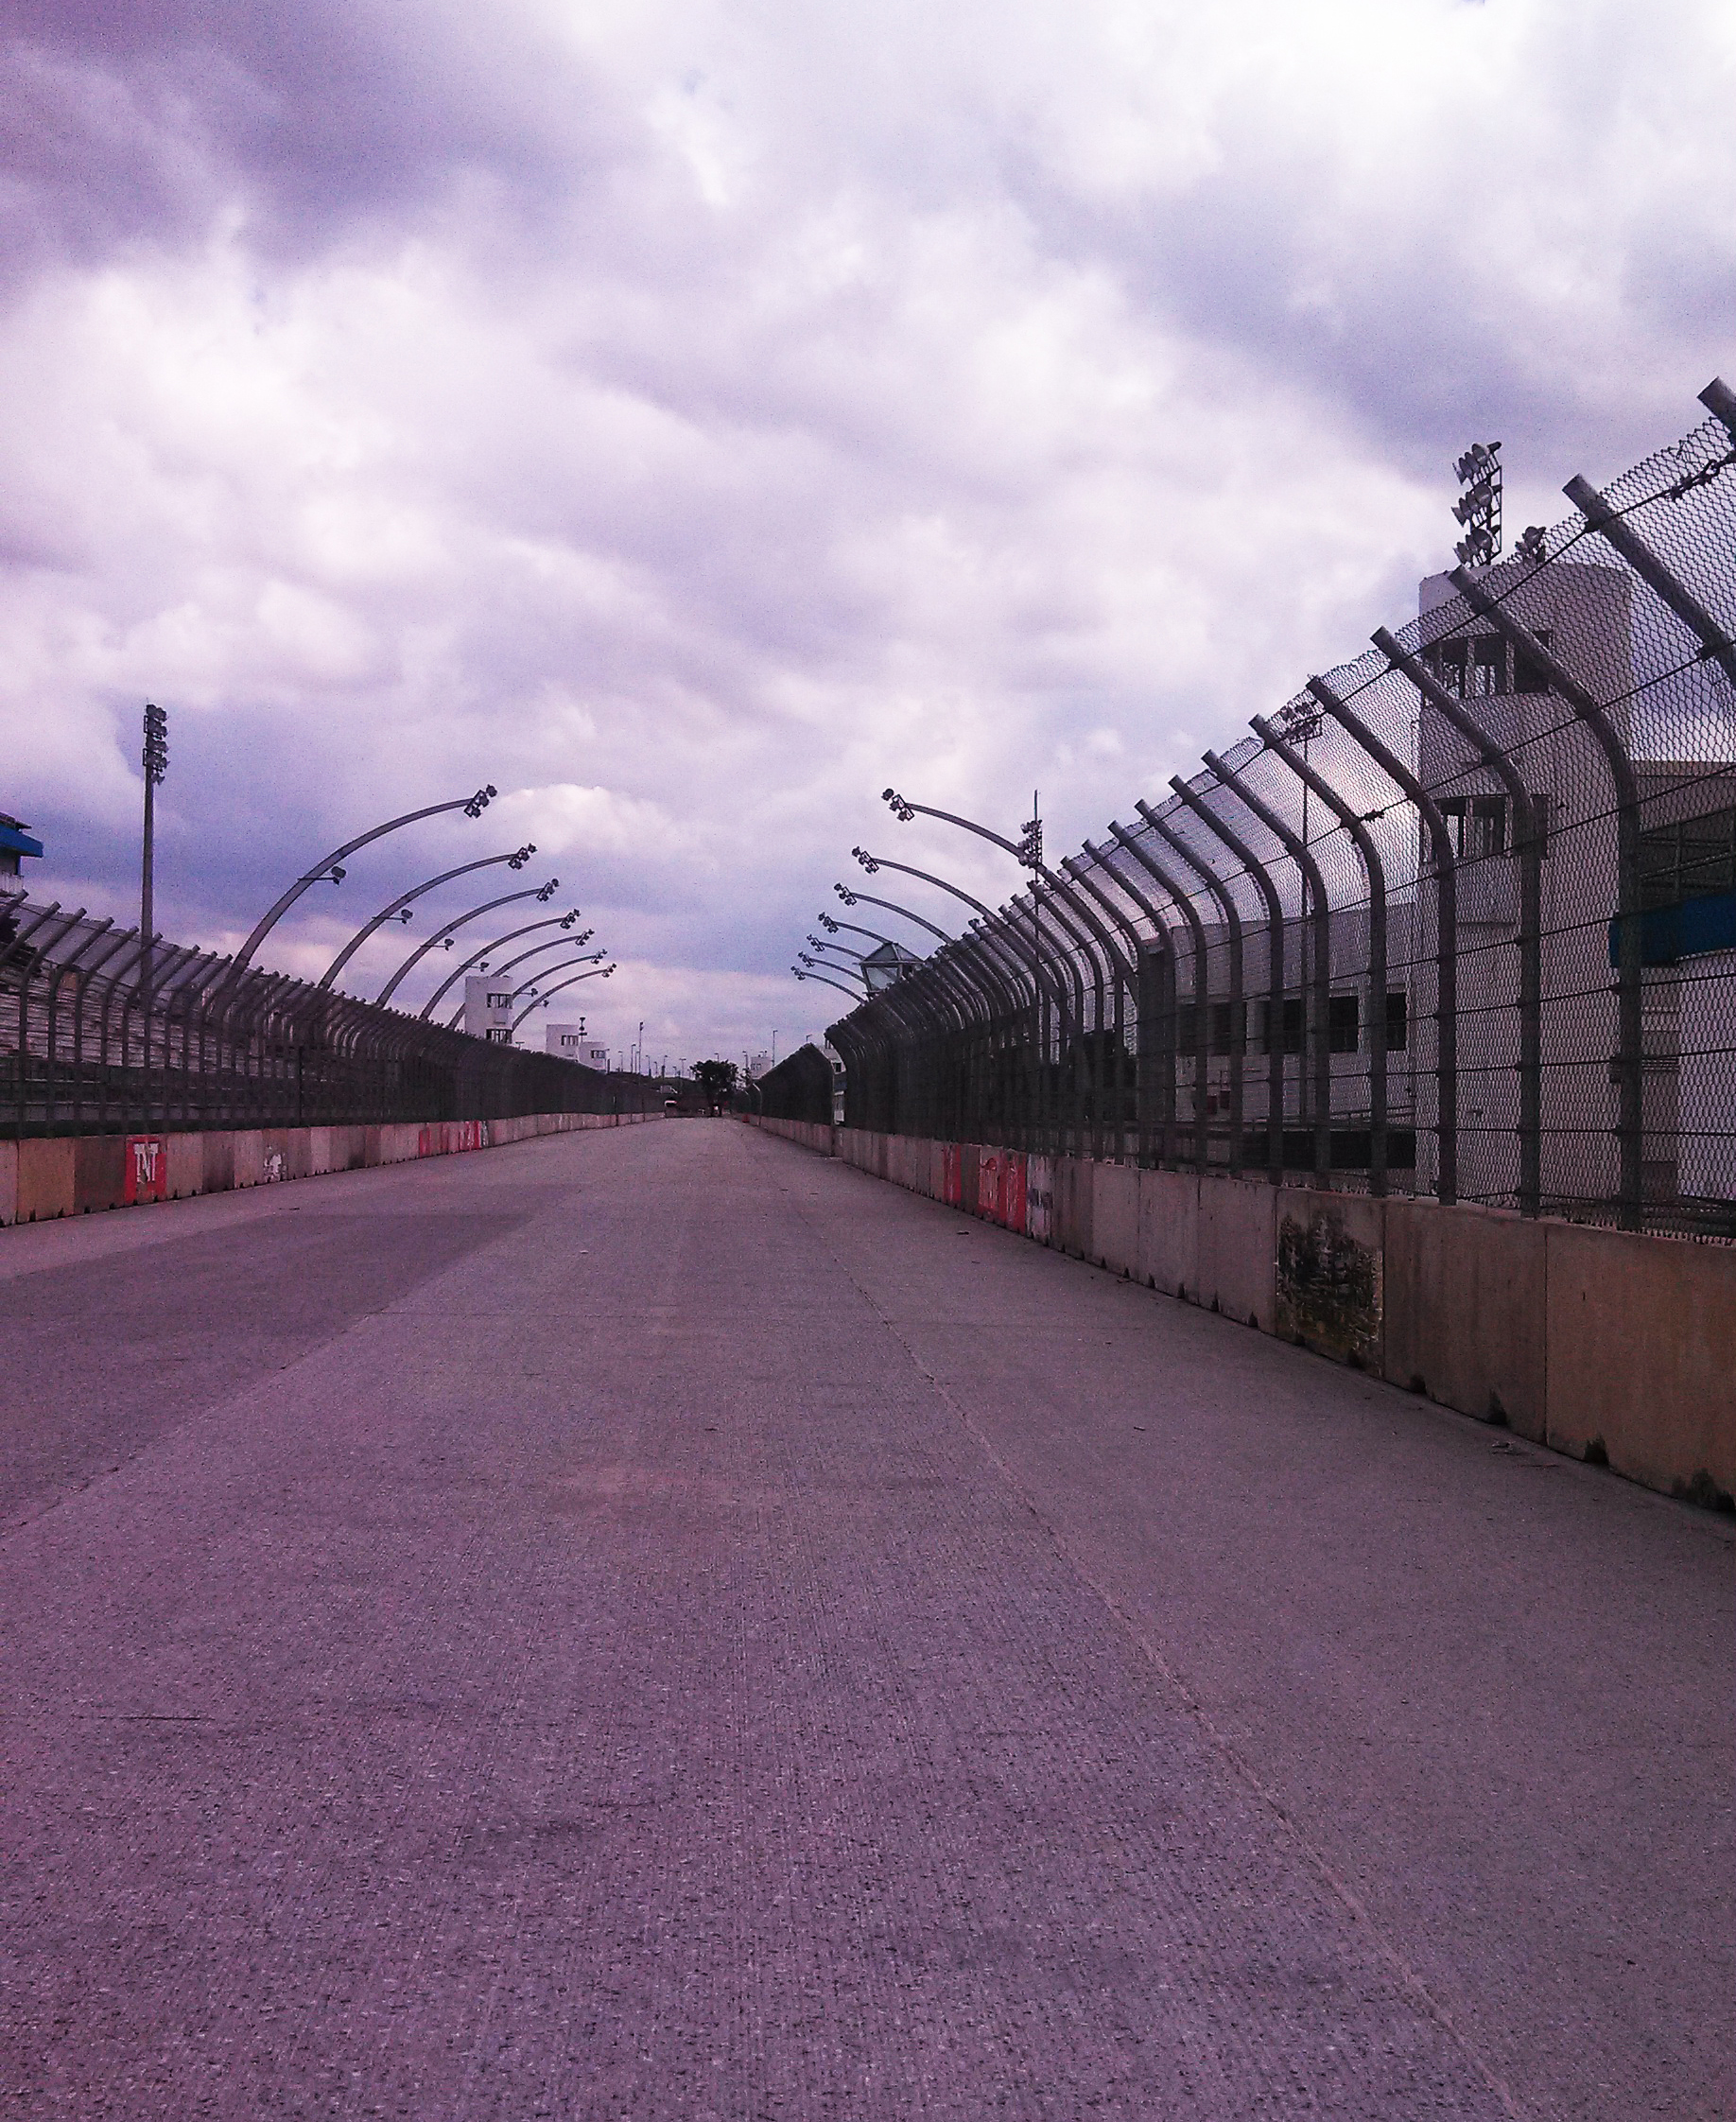 Carros que correrão o Grande Prêmio Indy 300 já estão no Anhembi, Secretaria Municipal de Infraestrutura Urbana e Obras